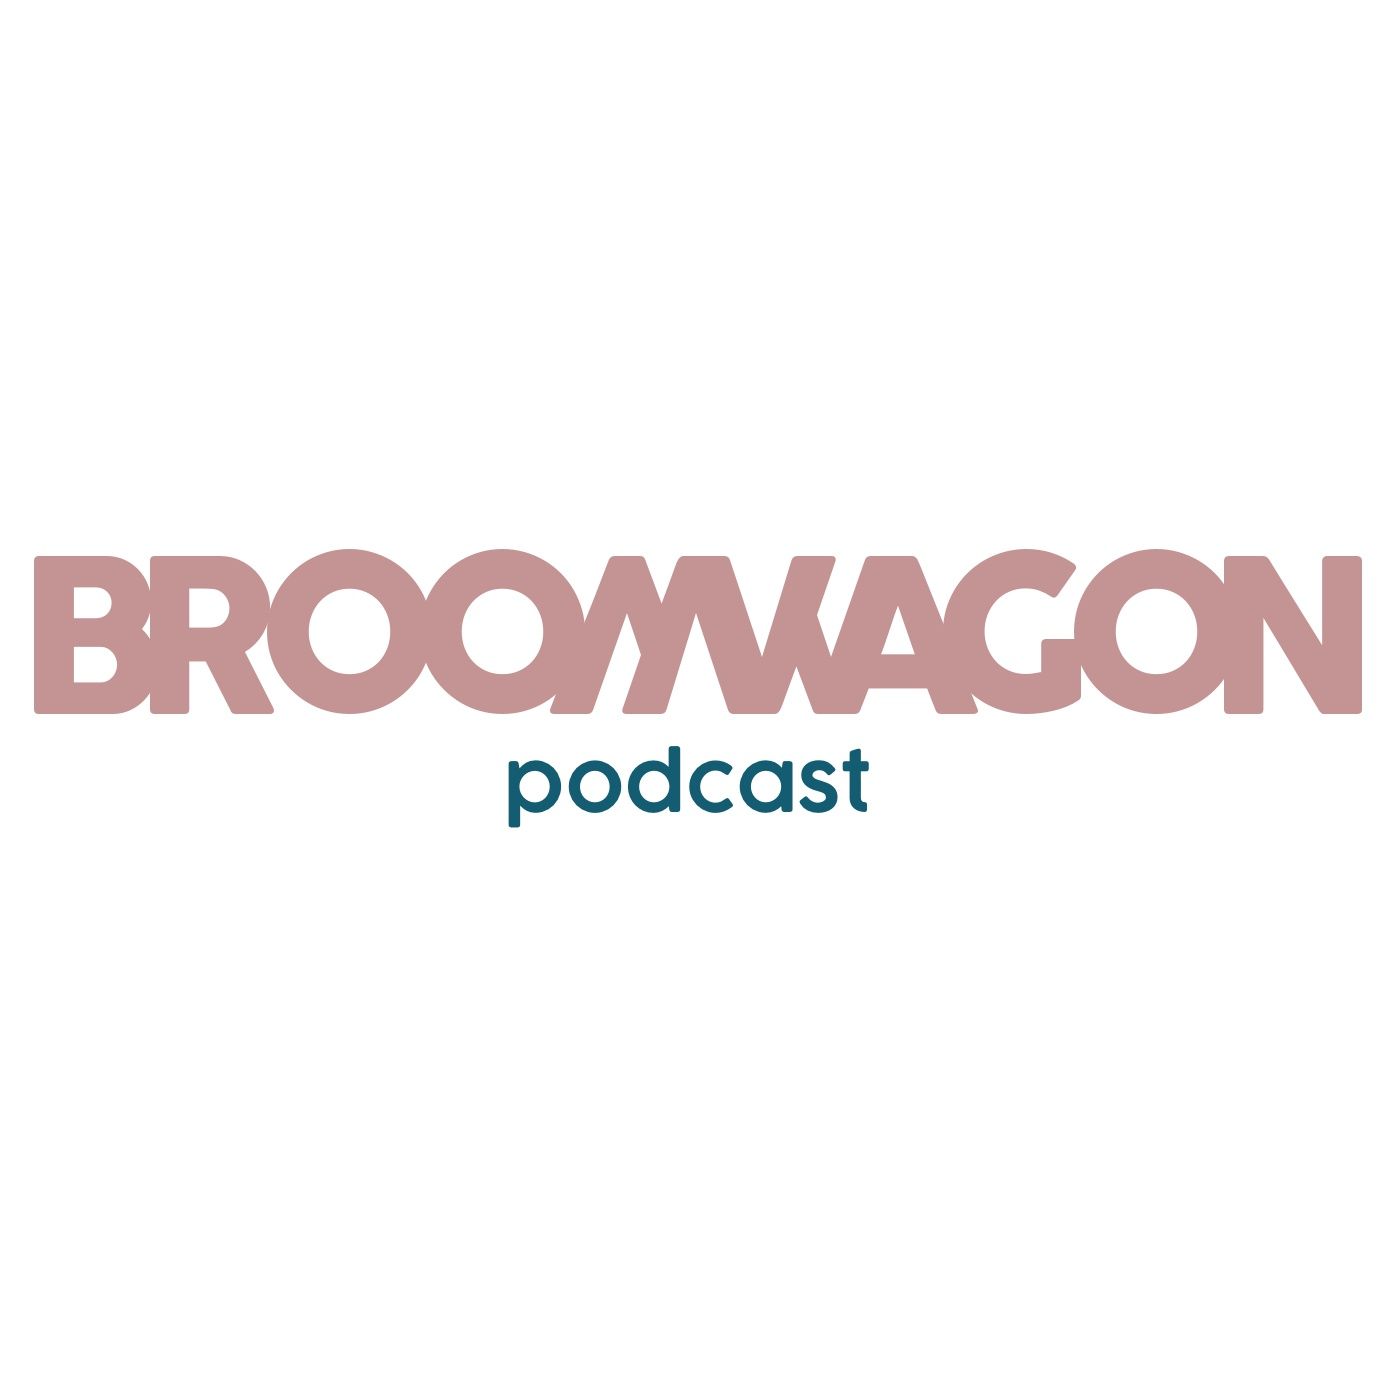 Broom Wagon